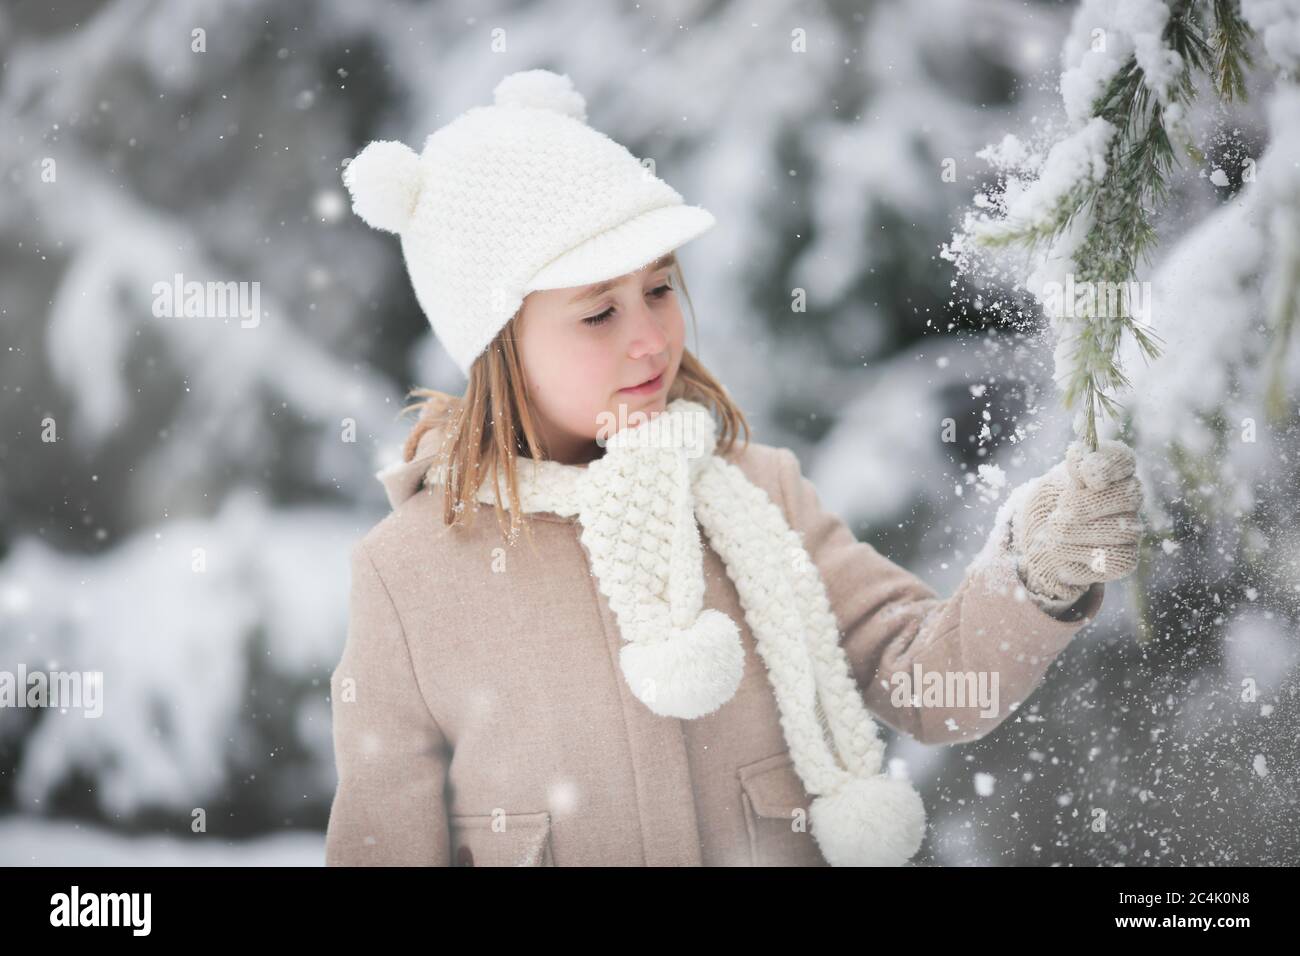 Das kleine Mädchen schüttelt Schnee von einer Tanne auf sich selbst. Spaziergang im Winterwald. Vergnügen für das Kind. Weihnachtsstimmung Stockfoto